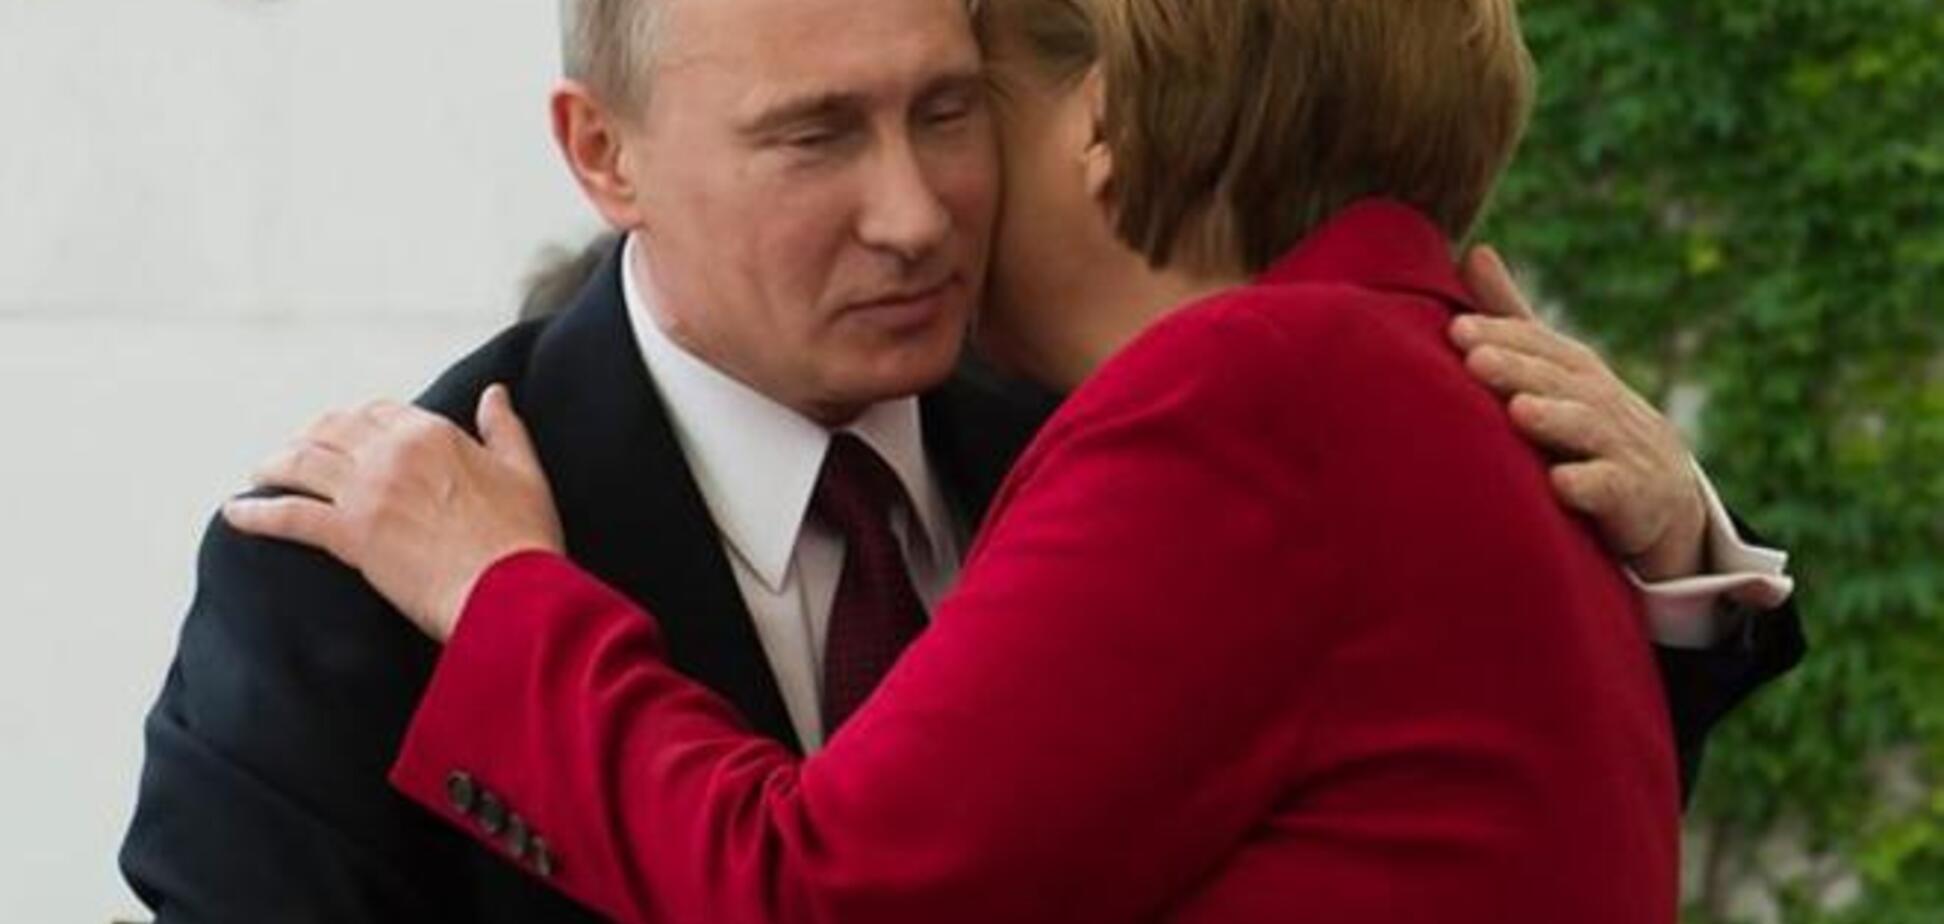 Данилов предположил 'тесное общение' Меркель и Путина в 80-е годы